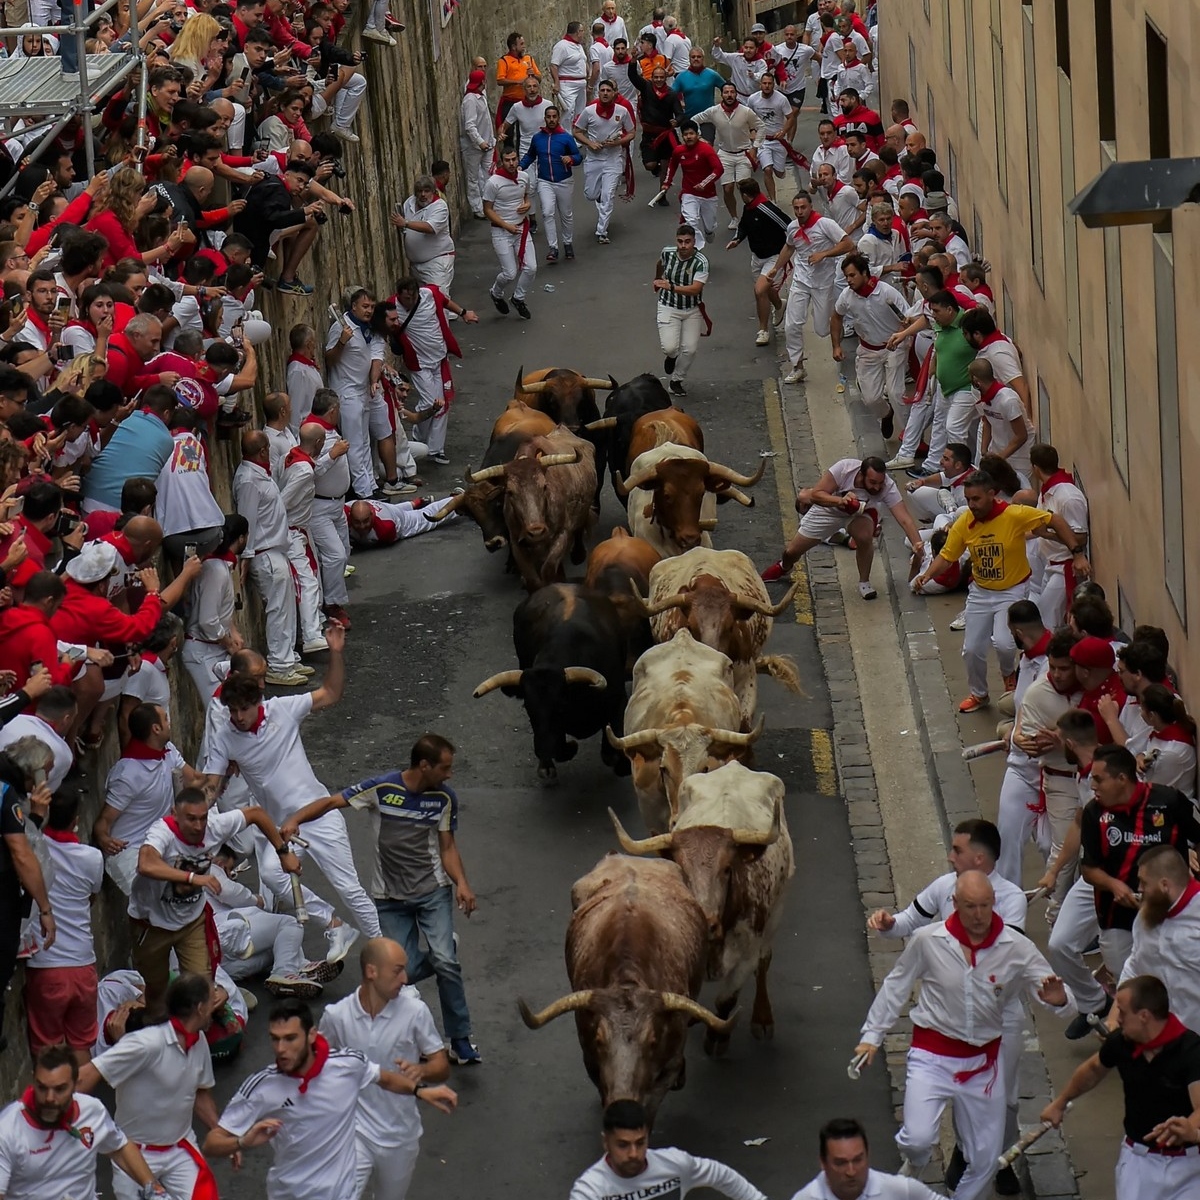 Первый забег быков на фестивале Сан-Фермин в Испании